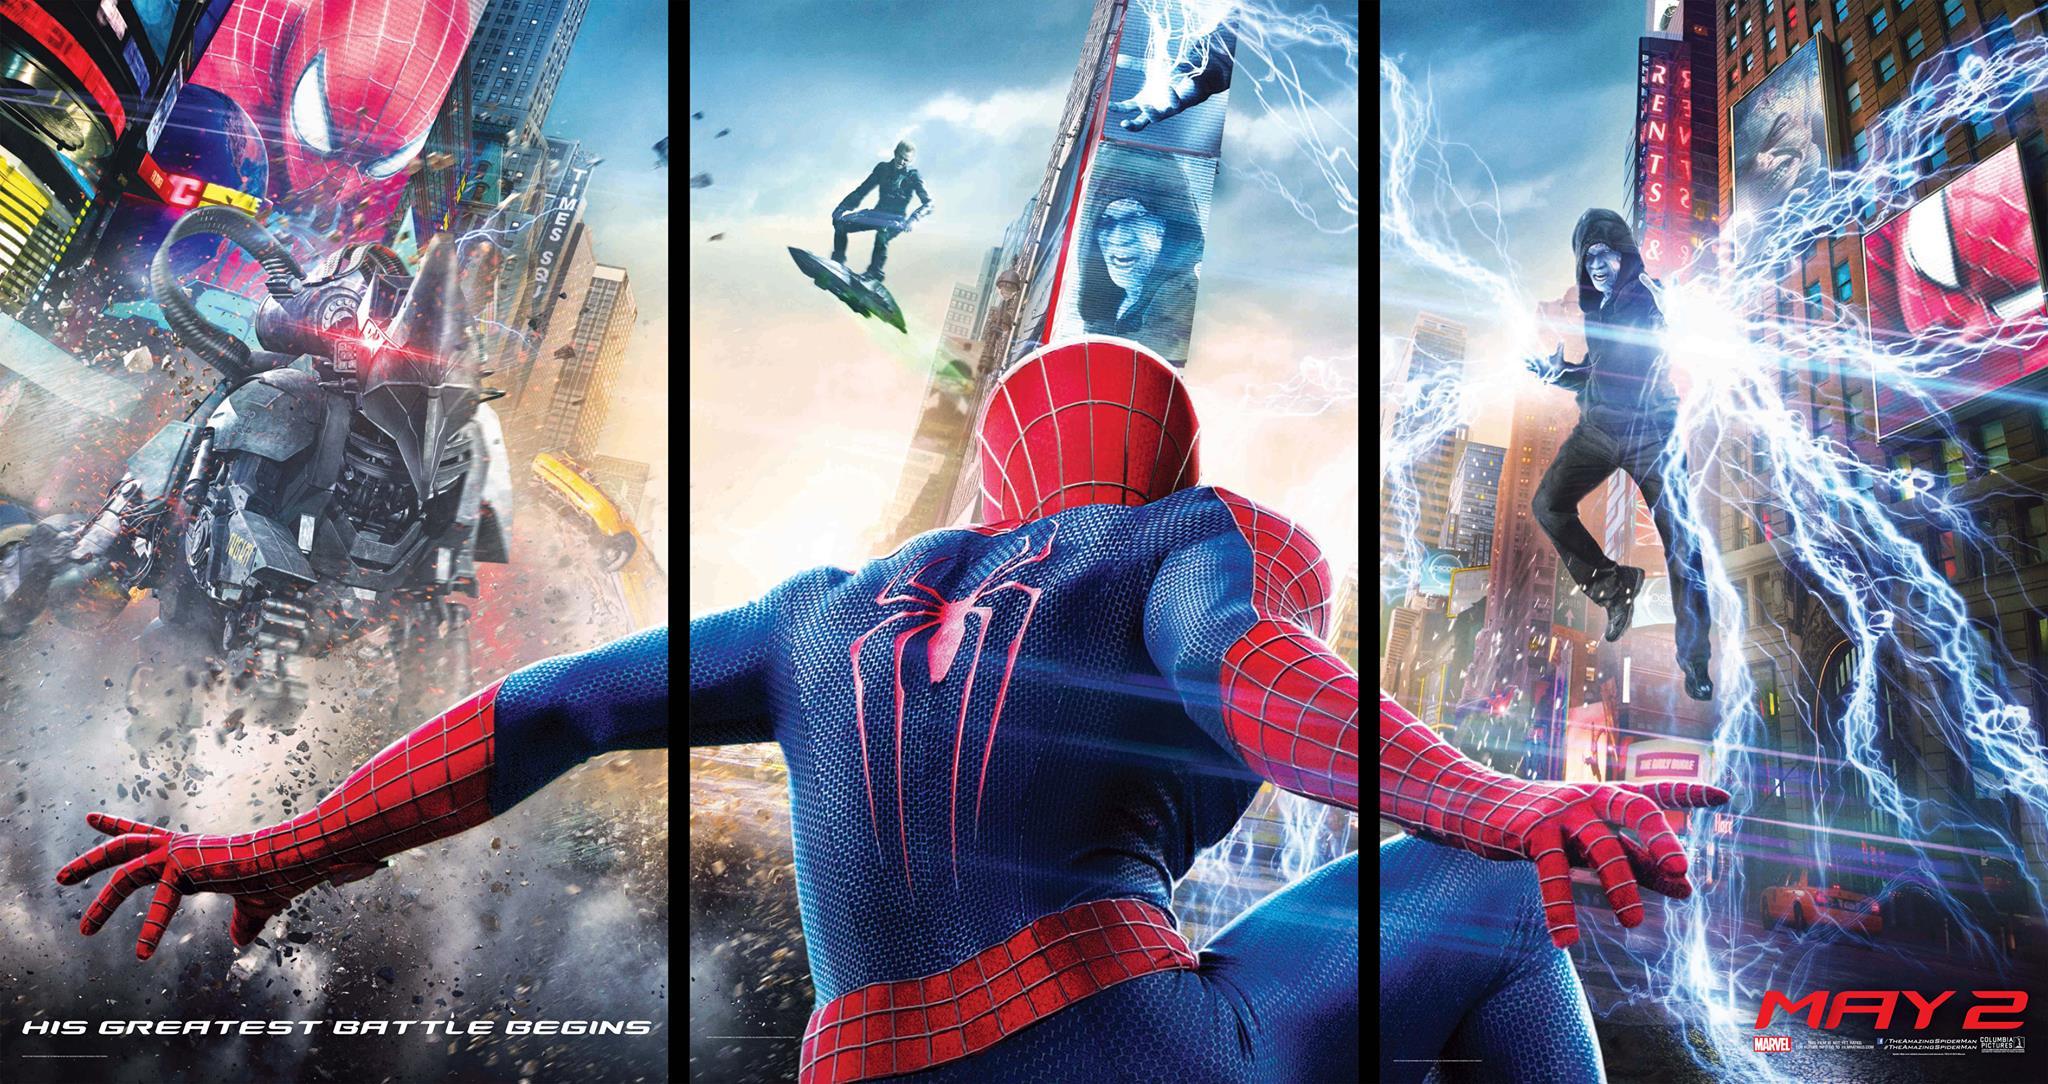 The Amazing Spiderman 2 Movie Review, Pertarungan Terbesar Spidey Dimulai!